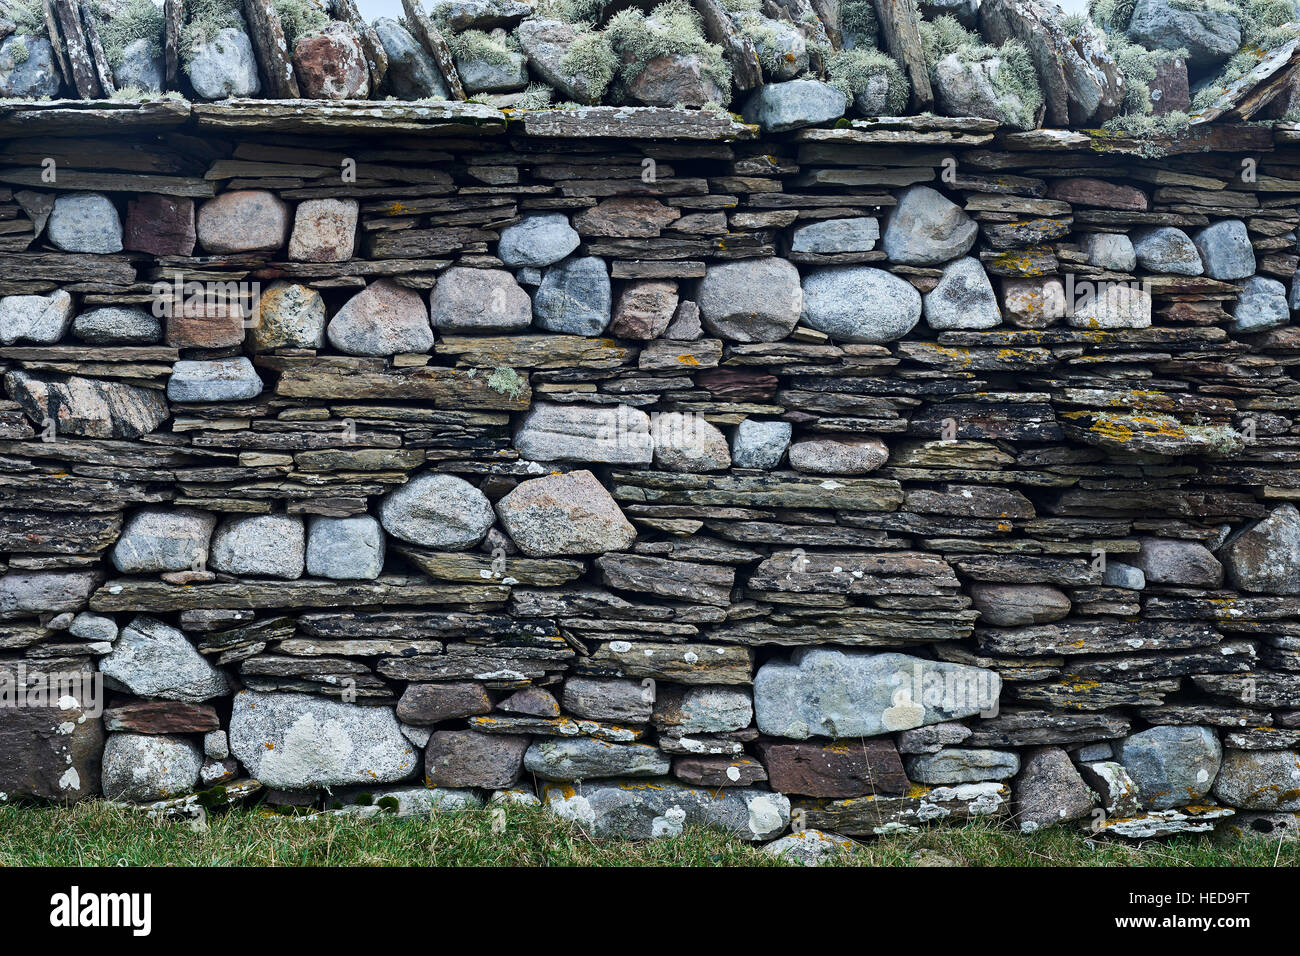 Trockenmauern Deich, Sandside Bay, Caithness, Schottland.  Mit zwei verschiedenen Steinsorten gebaut. Stockfoto